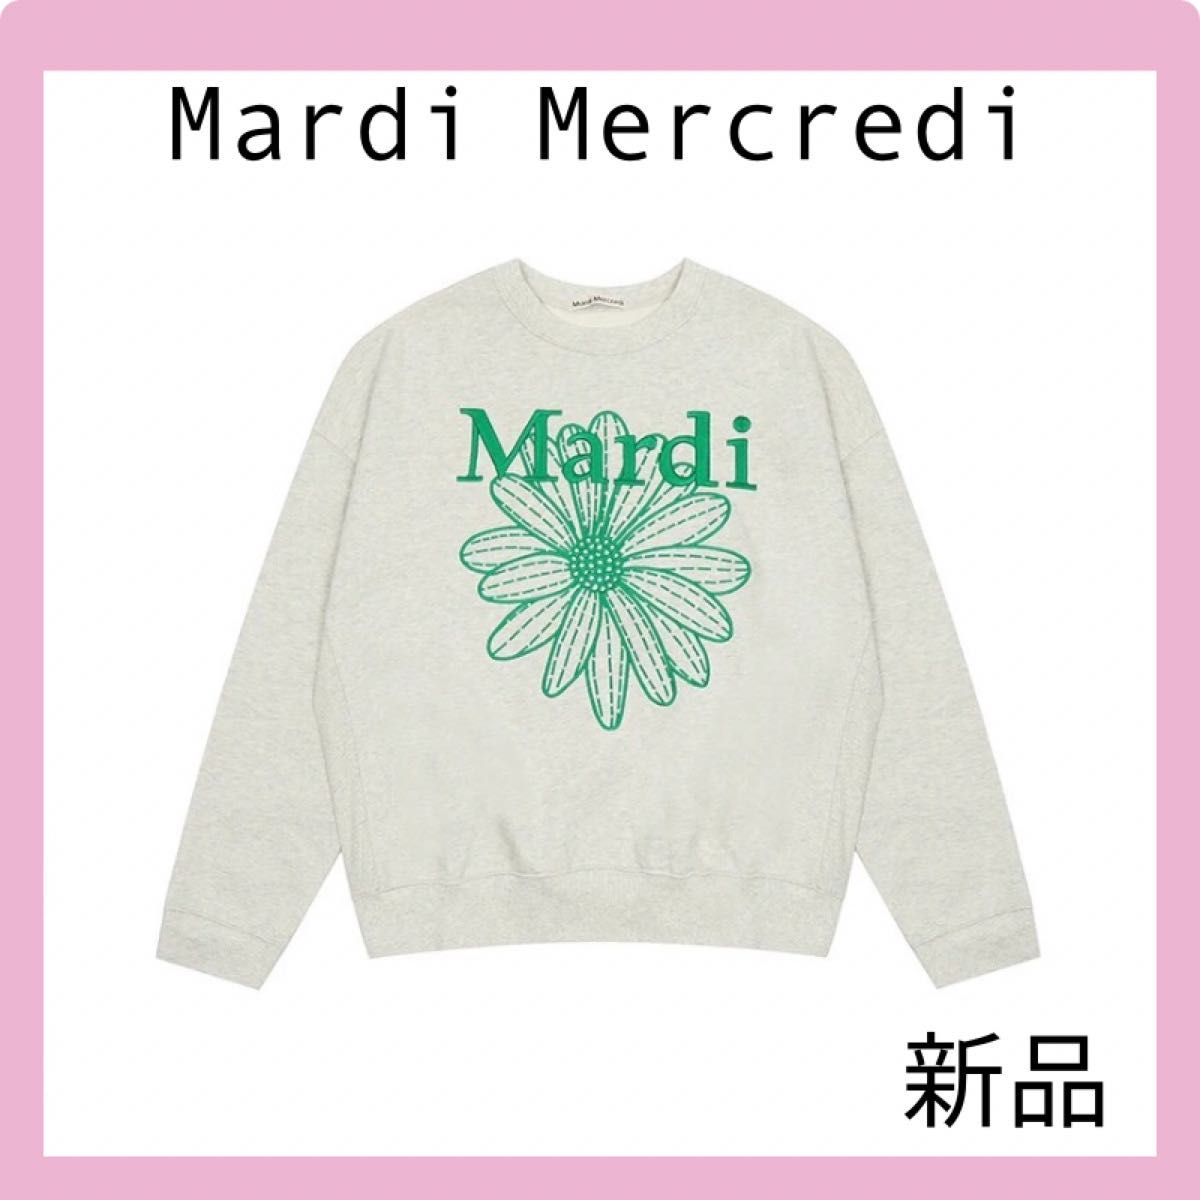 Mardi Mercredi マルディメクルディ 刺繍 トレーナー 緑 グリーン グレー